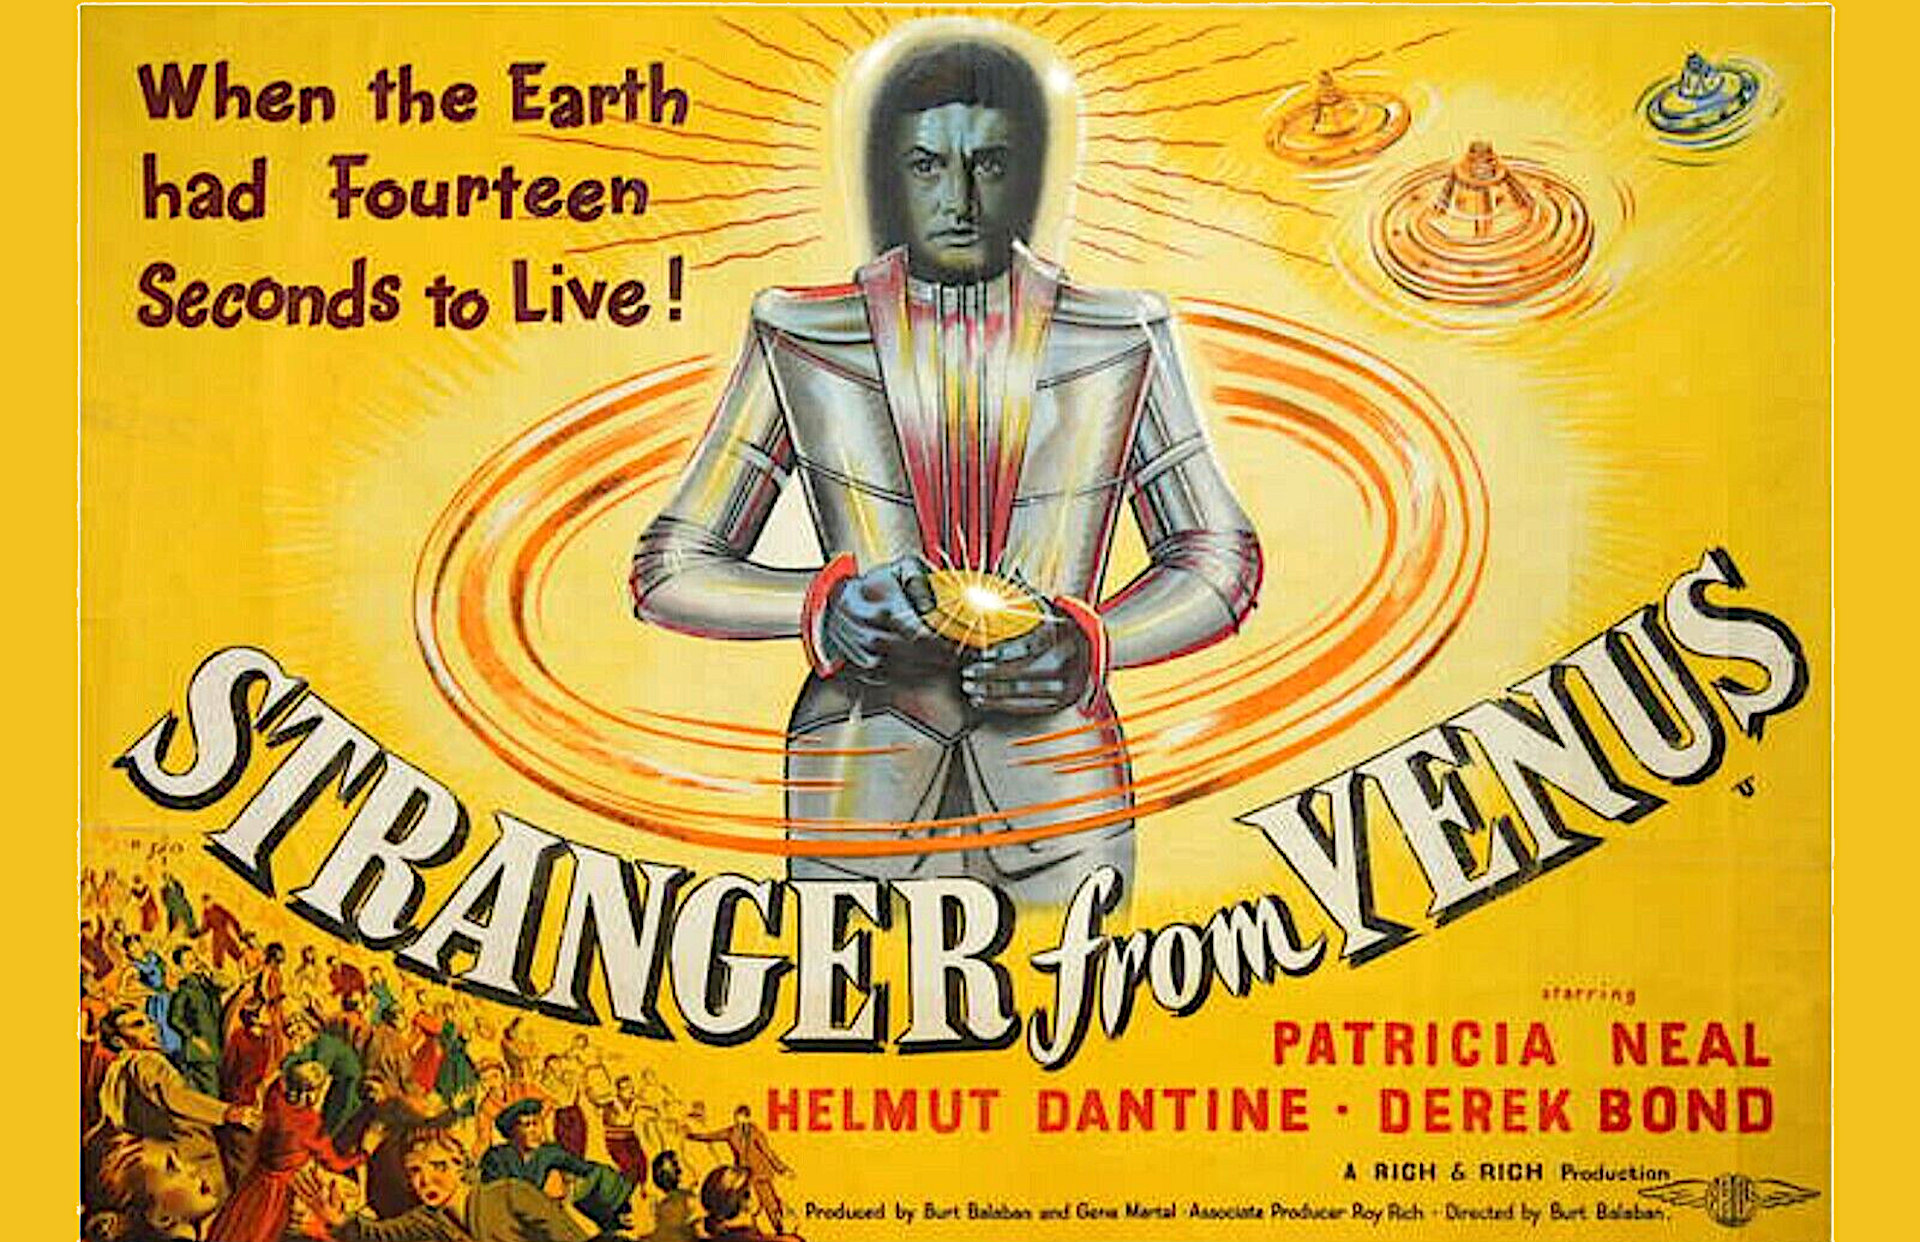 Stranger from Venus (1954)